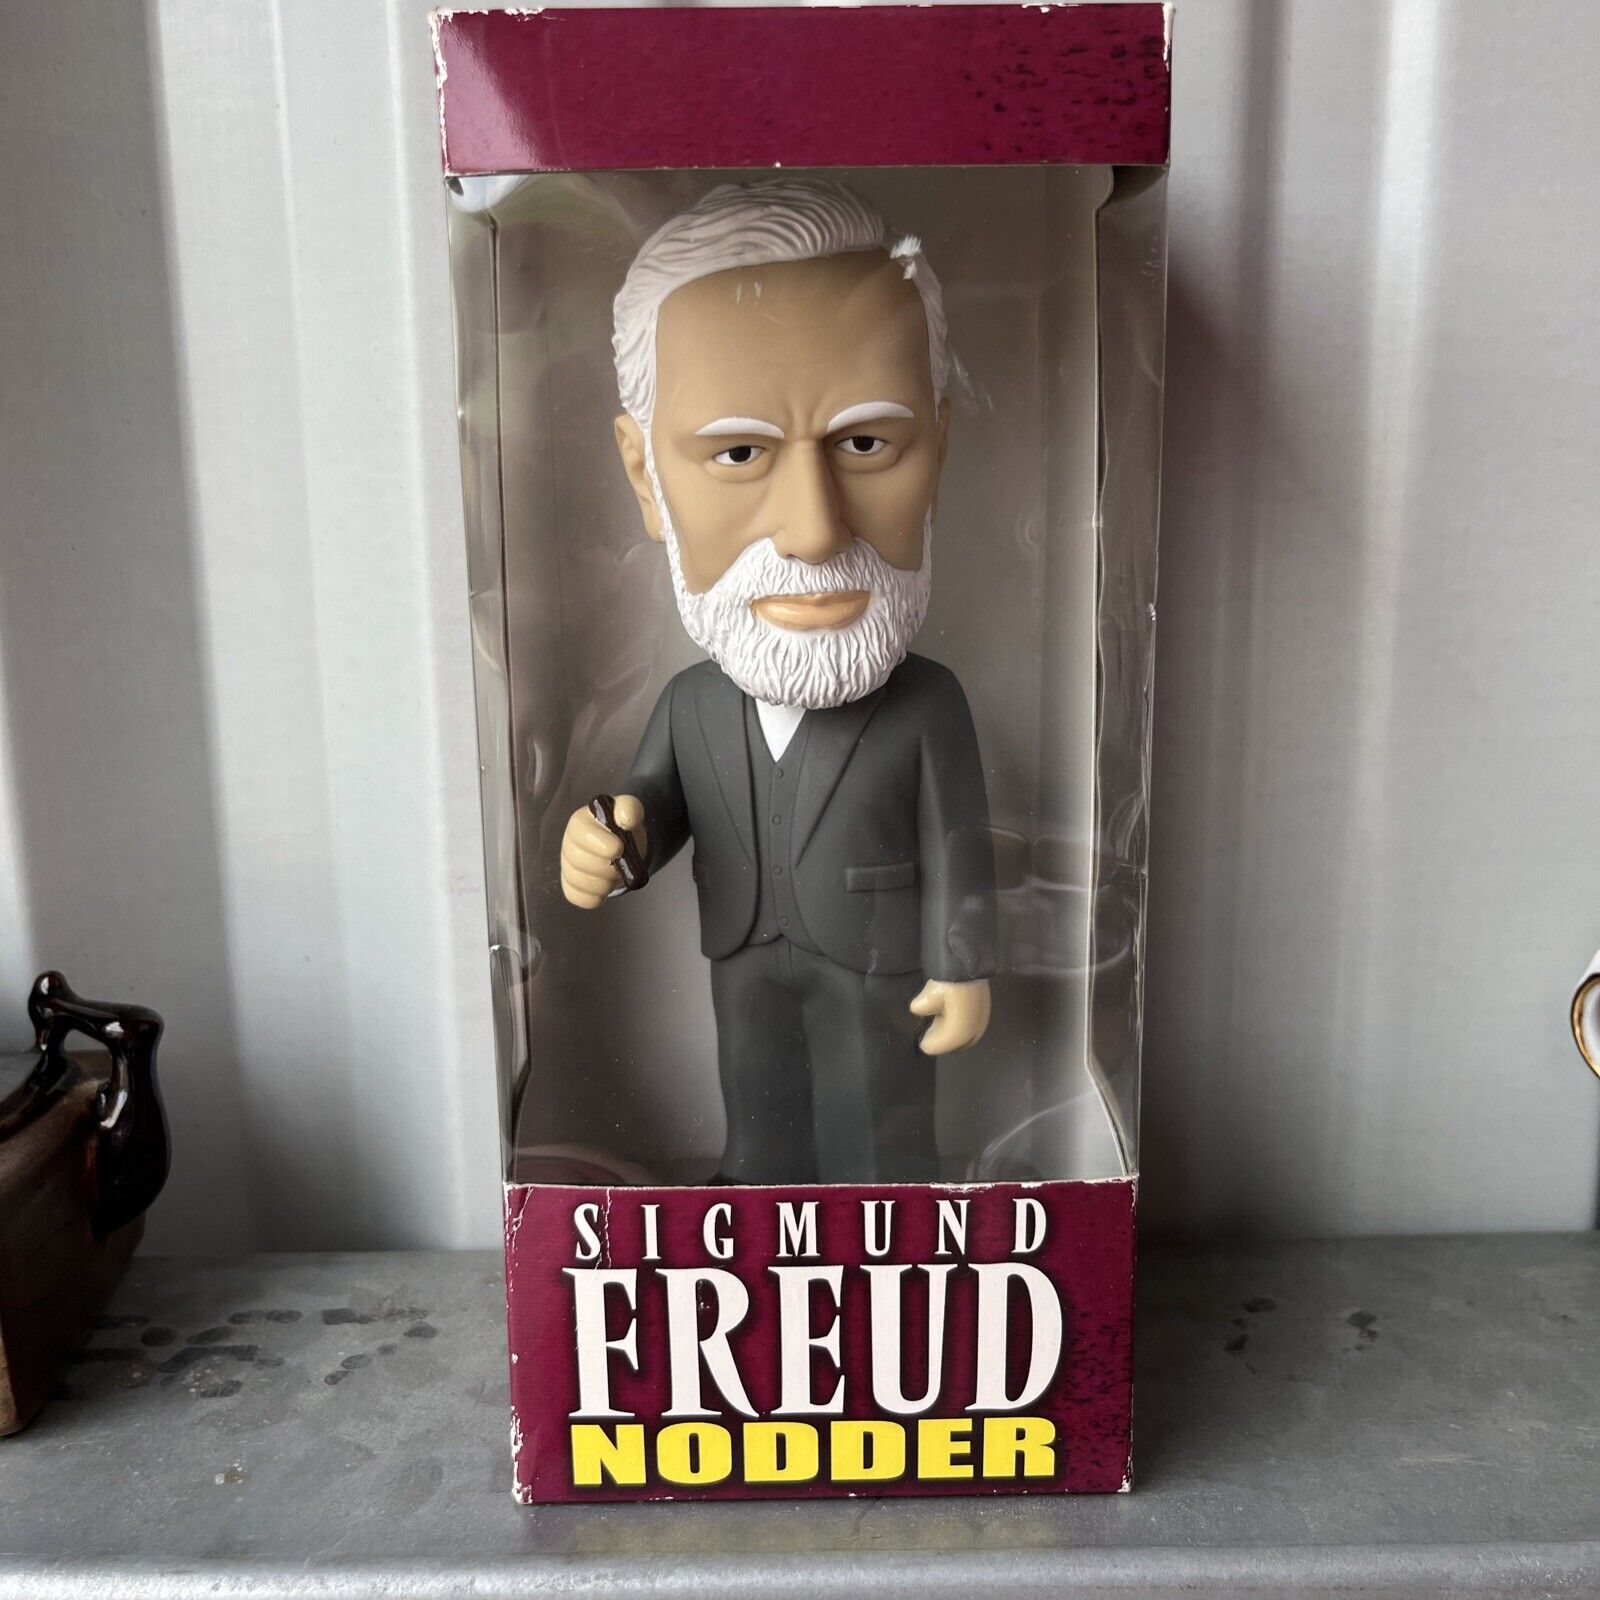 Sigmund Freud Nodder Bobblehead Holding Cigar 2003